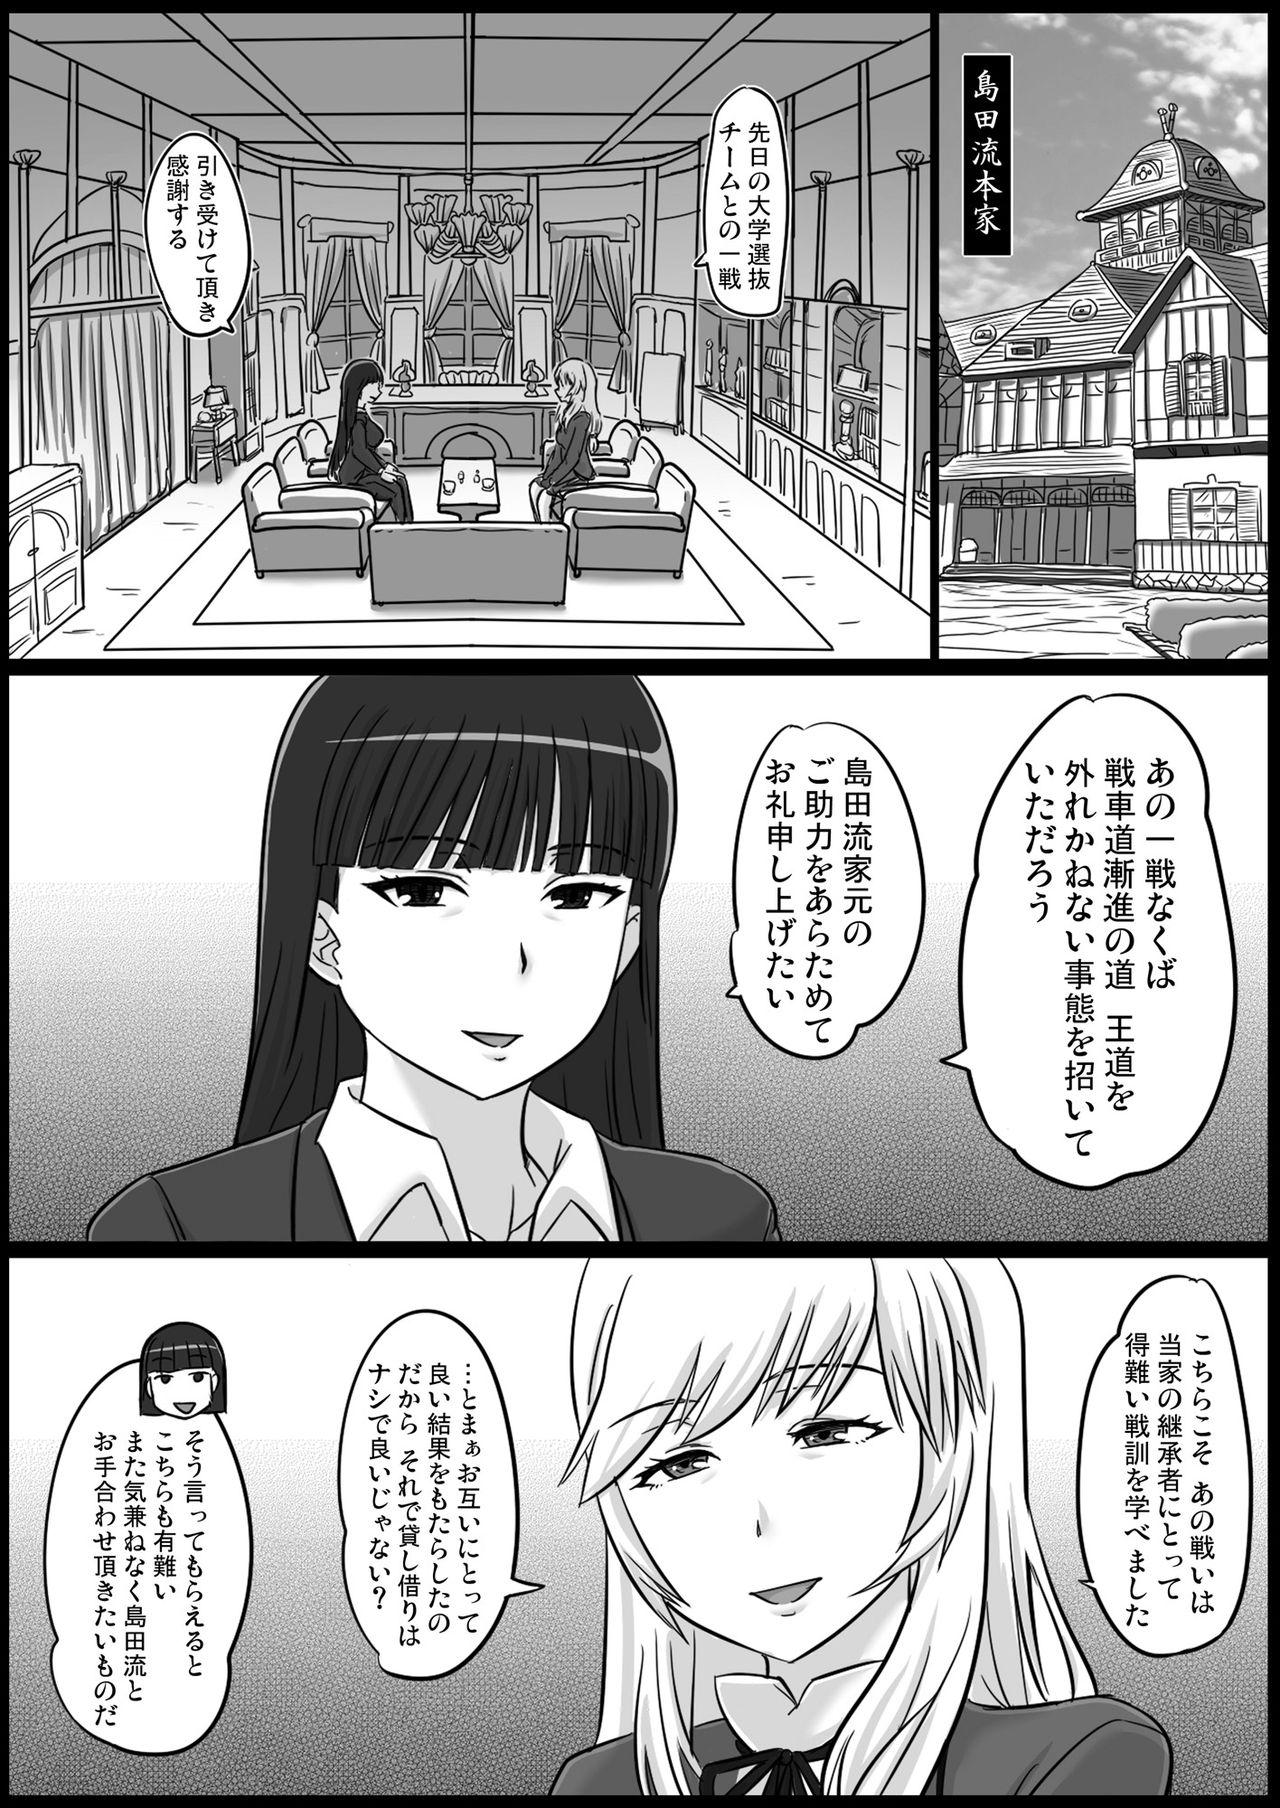 Girlfriends Okinai Iemoto - Girls und panzer Selfie - Page 2